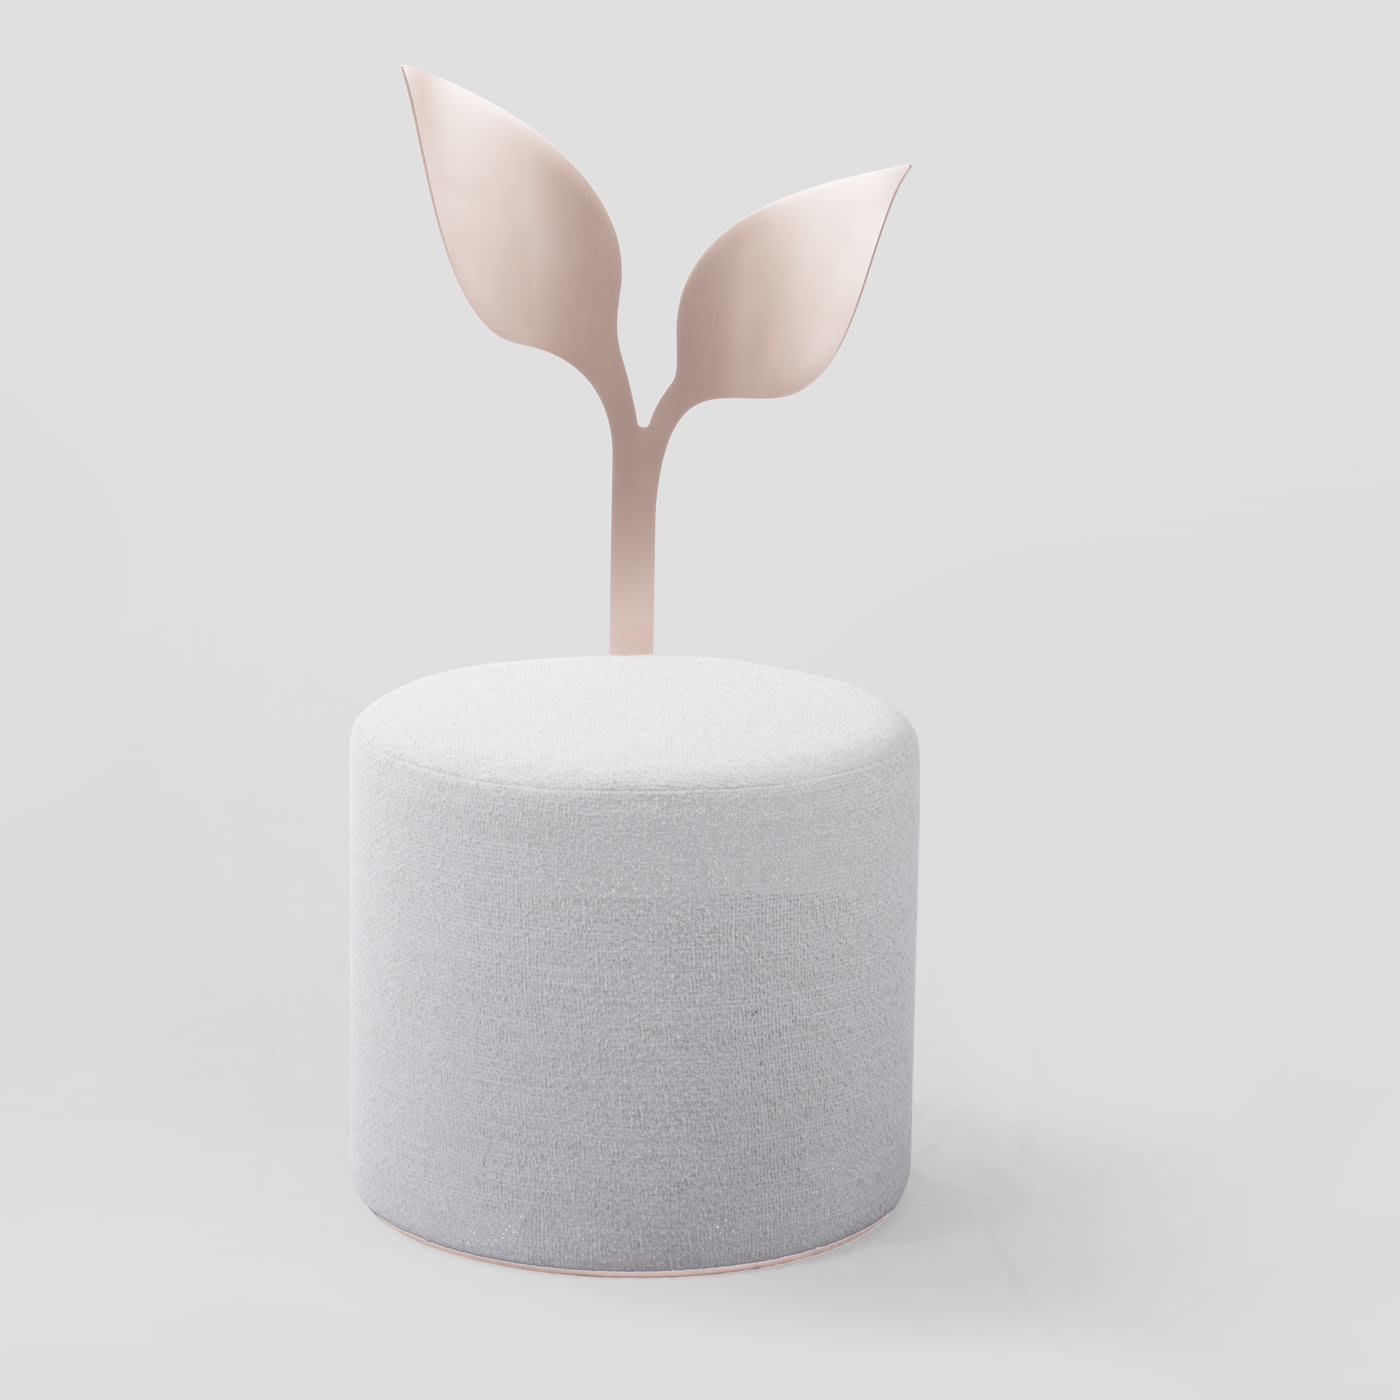 Ivy White Pouf #1 by Artefatto Design Studio - Secolo